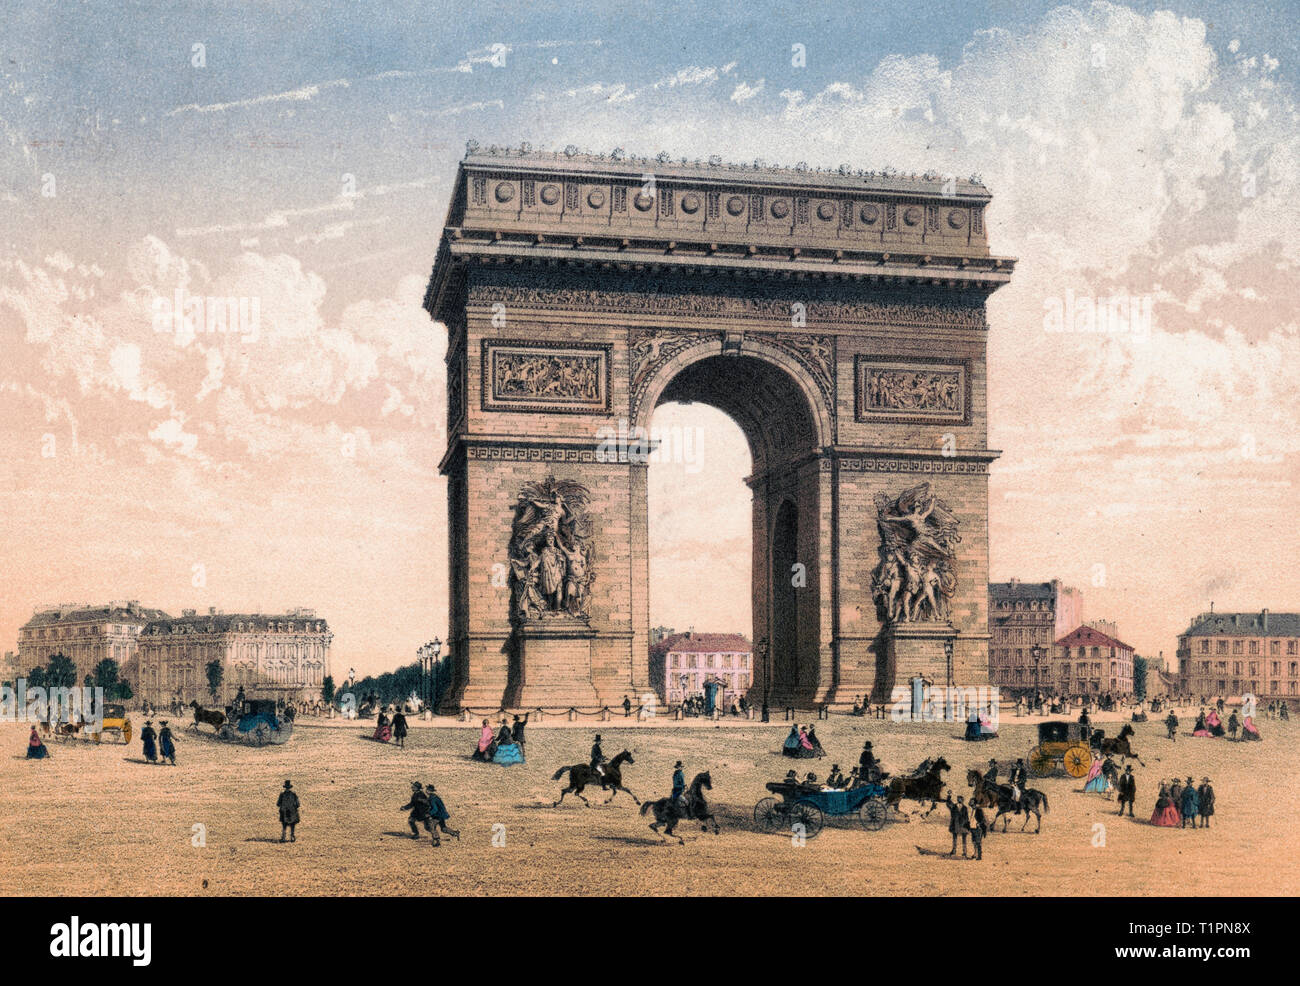 París. Arc de Triomphe de l'Etoile - impresión muestra una vista a nivel de calle del Arc de Triomphe de l'Etoilewith, peatones, jinetes y carruajes tirados por caballos que pasaban en la plaza. Circa 1855 Foto de stock